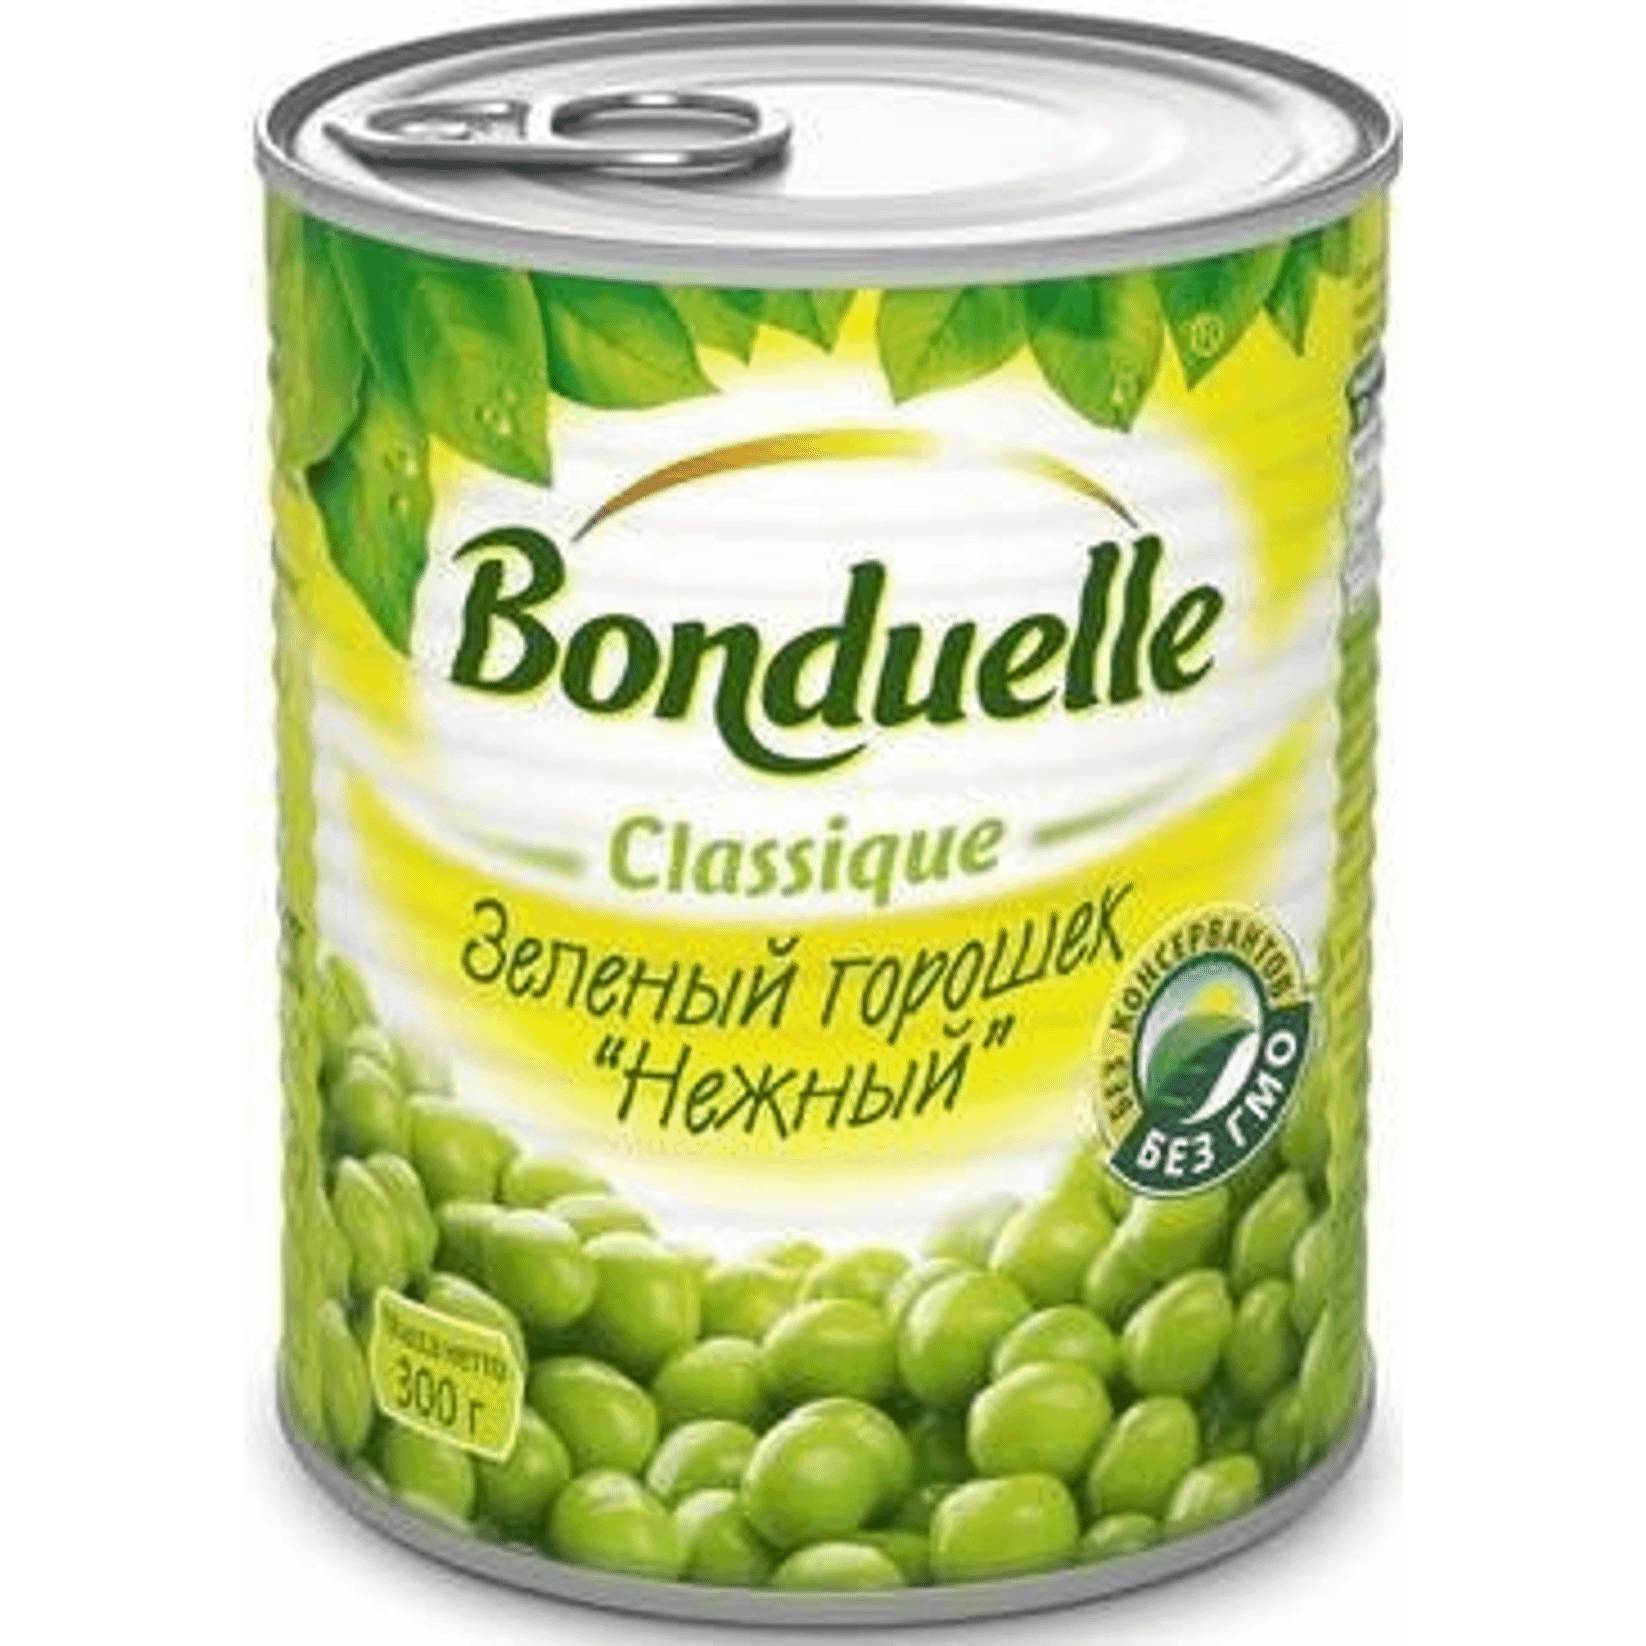 Зеленый горошек Bonduelle нежный, 350 г галеты овощные bonduelle зеленый букет 300 гр